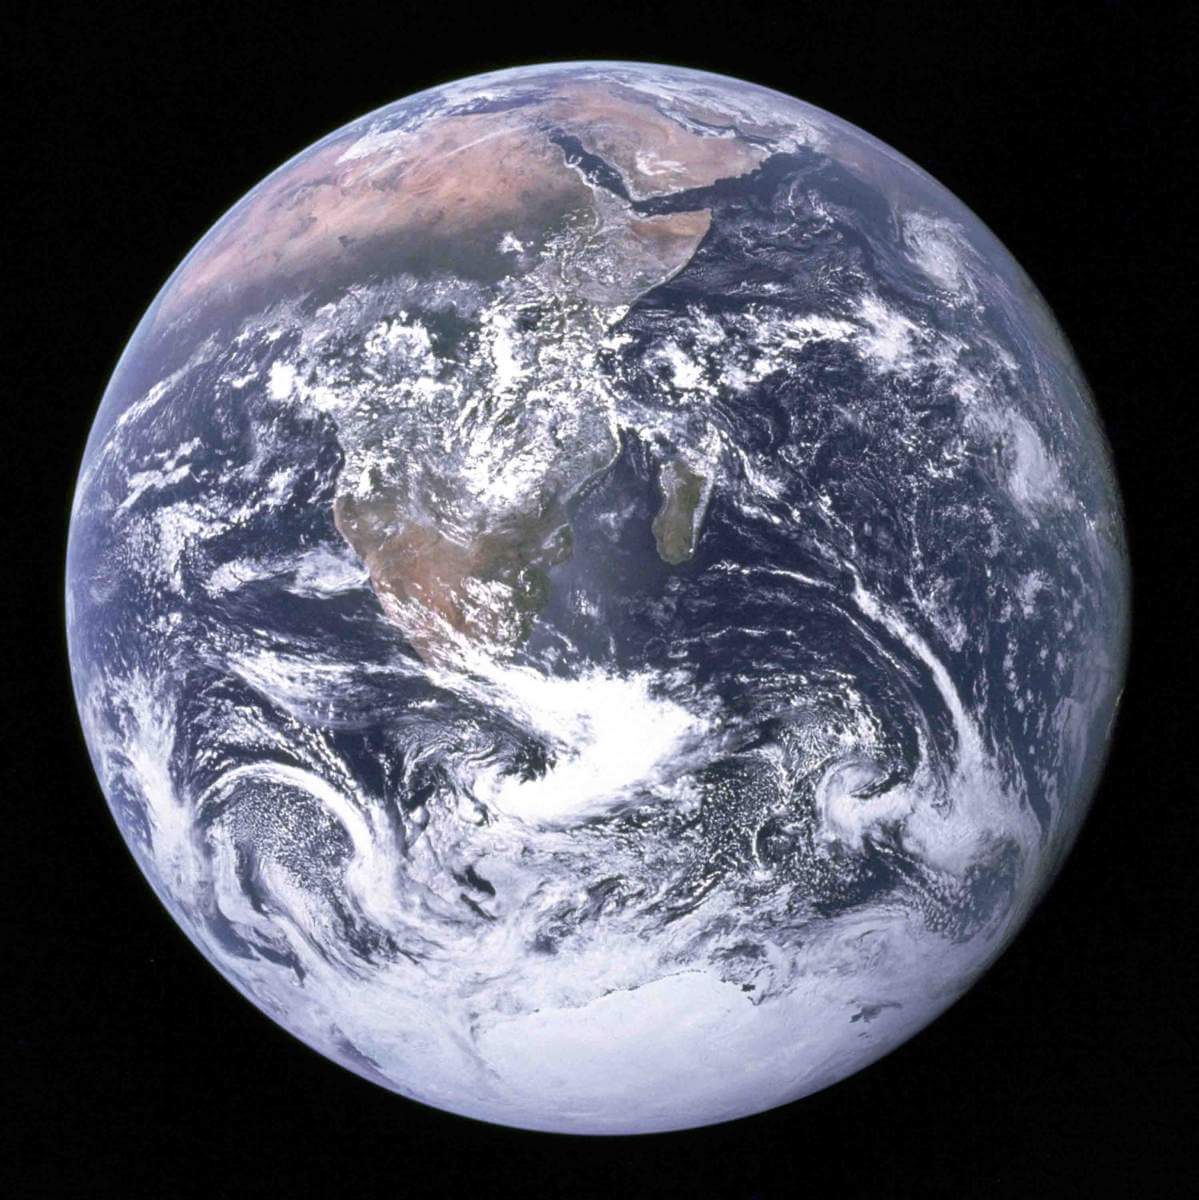 תצלום איקוני של כדור-הארץ שצולם ב-7 בדצמבר-1972 על-ידי הצוות של משימת החלל אפולו 17. שני חצאי הכדור – הצפוני והדרומי – נראים בהירים באותה המידה. מקור: נאס"א